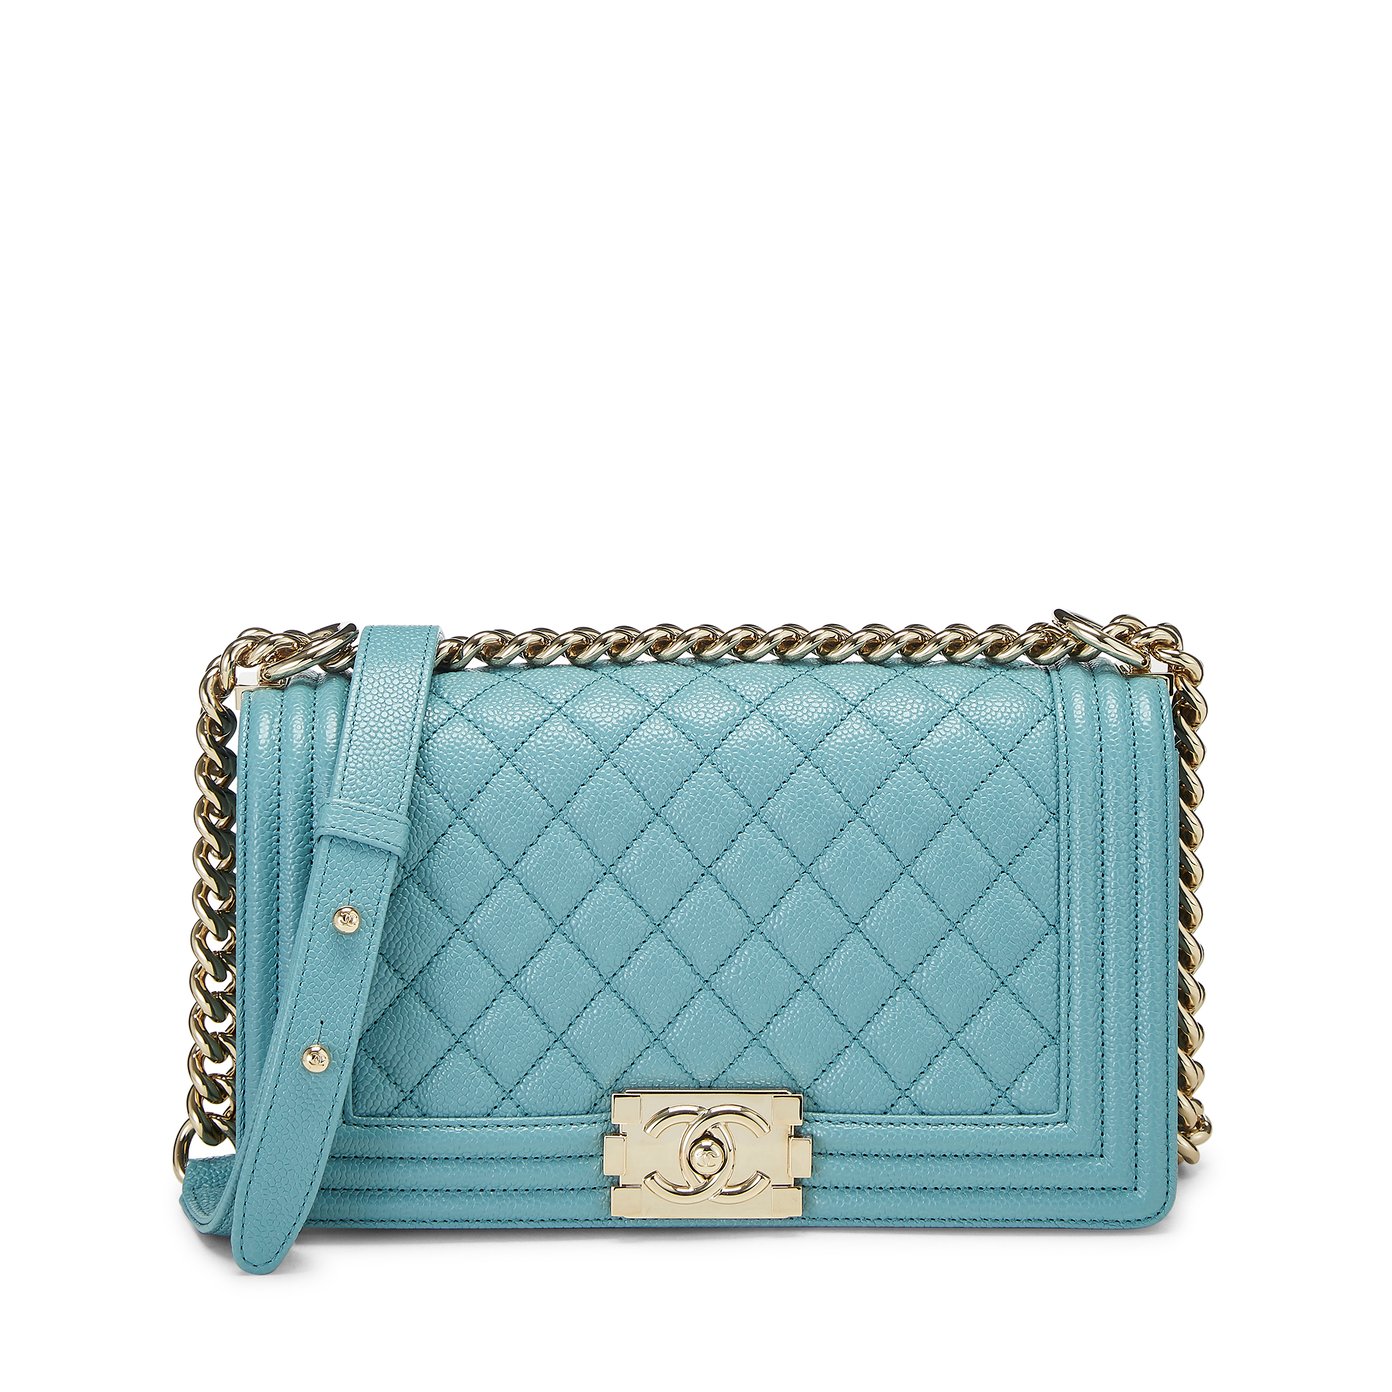 chanel handbag blue